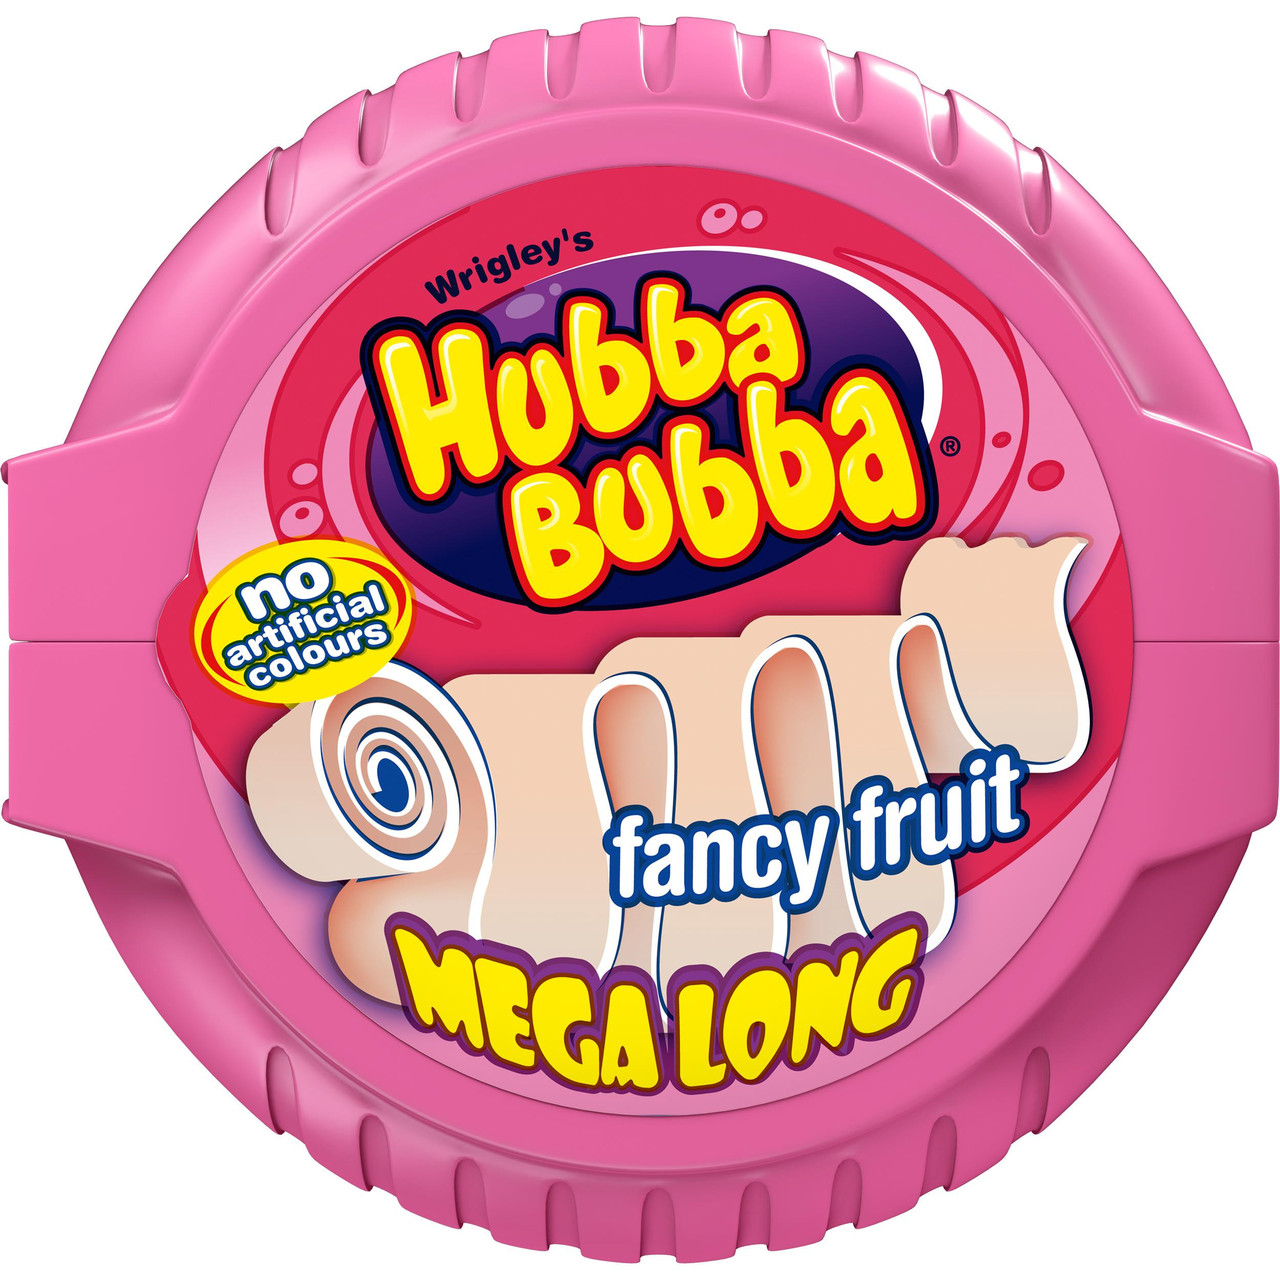 Жевательная резинка в рулетке  Хубба-Бубба  hubba bubba fancy fruit  (розовая) 56 гр